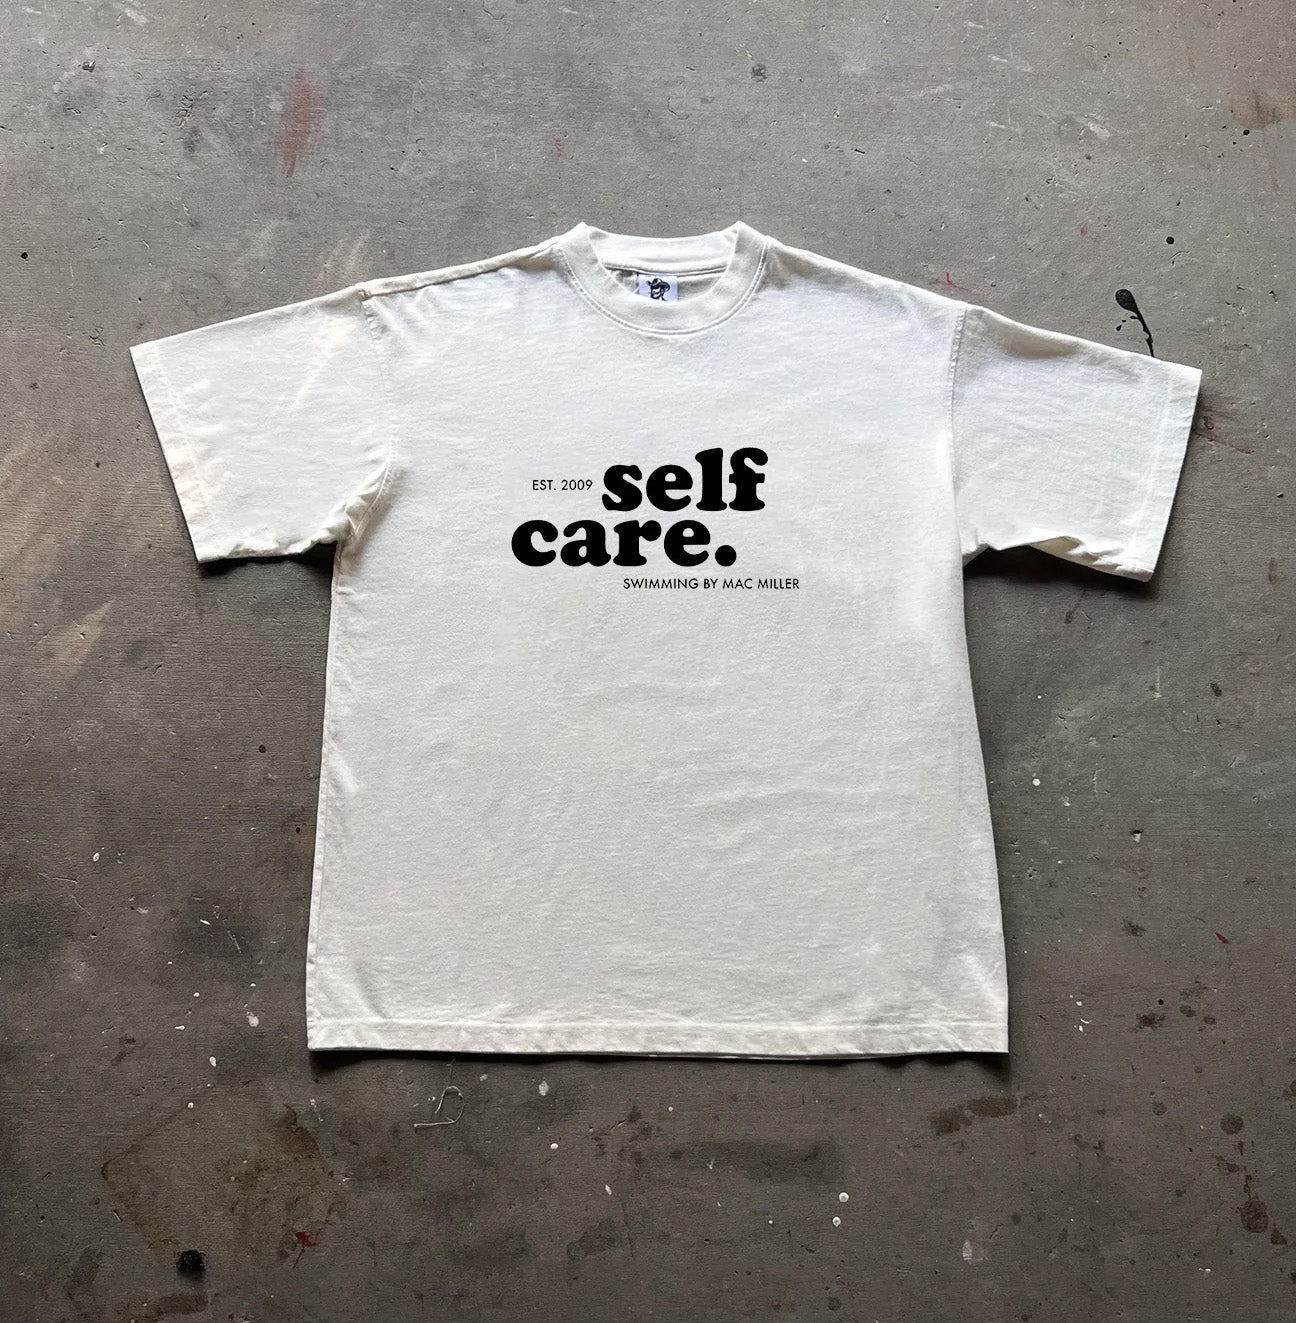 MAC MILLER "self care" Unisex T-shirt